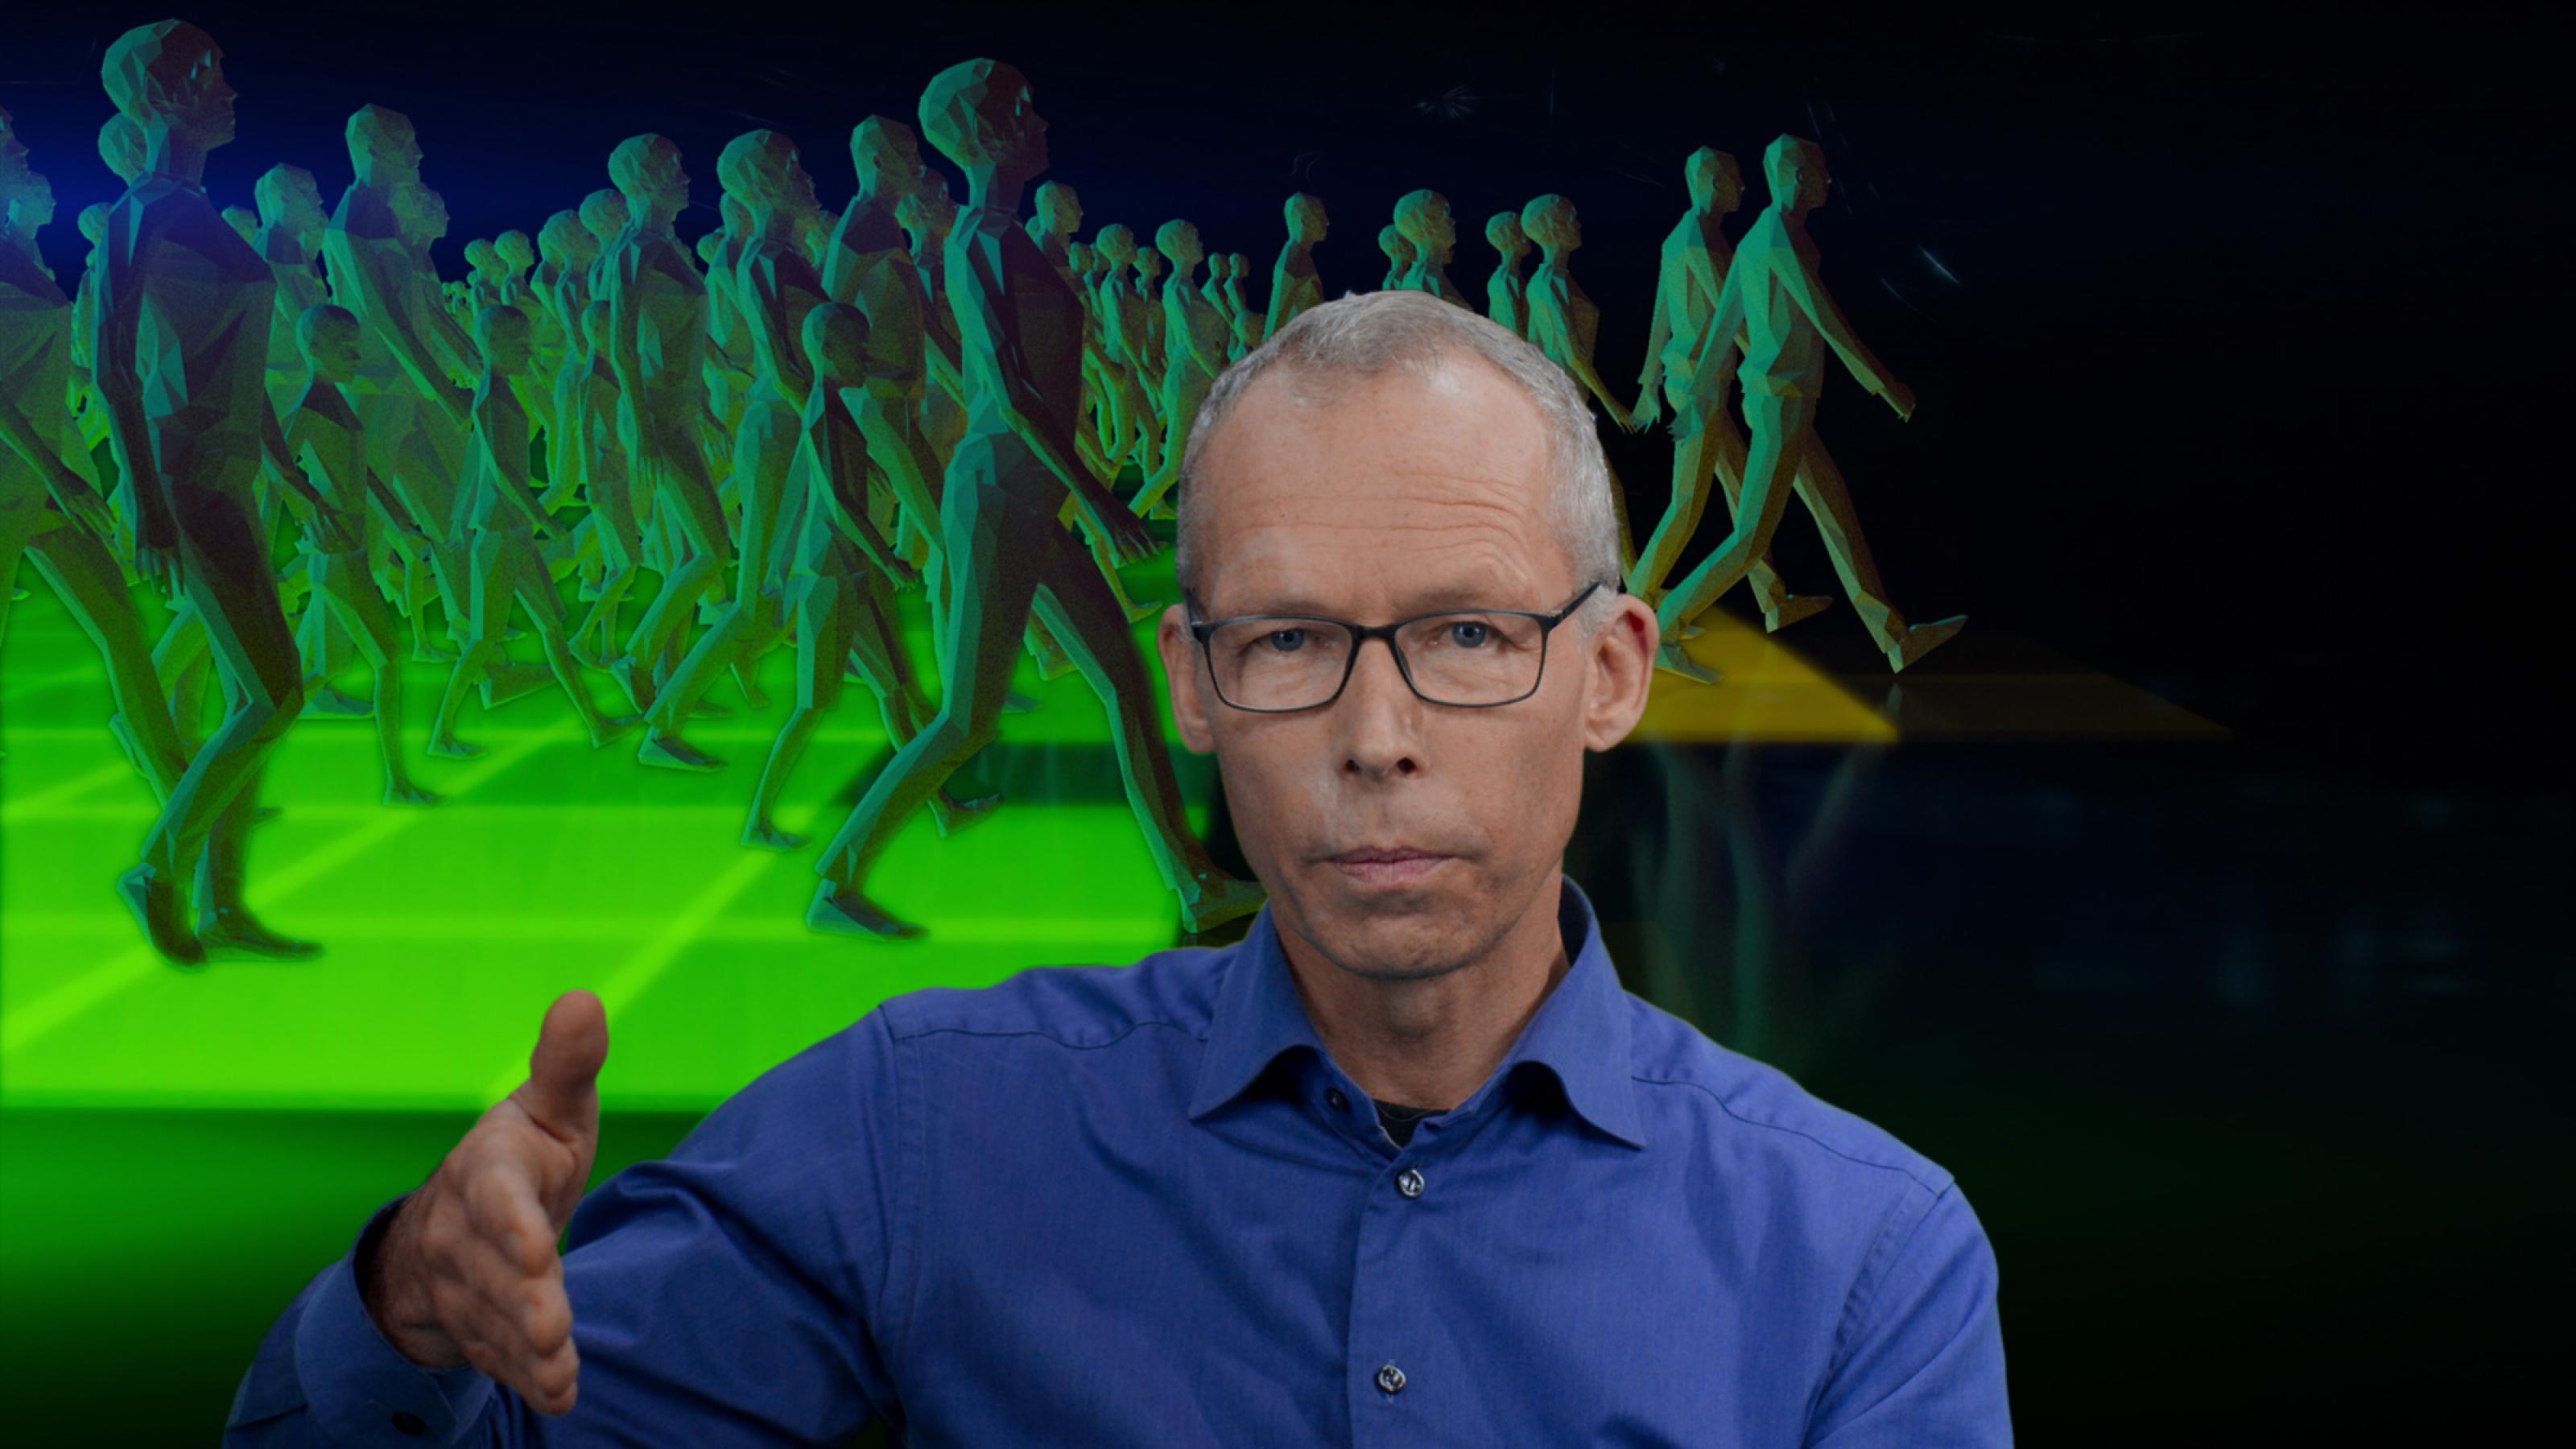 Im Vordergrund Johan Rockström, ein älterer Mann mit Brille, der mit seiner rechten Hand etwas illustriert, im Hintergrund eine Graphik: Viele menschliche Figuren gehen in einer grünen Zone, einige sind schon auf gelben Untergrund unterwegs. © 2021 Netflix, Inc.